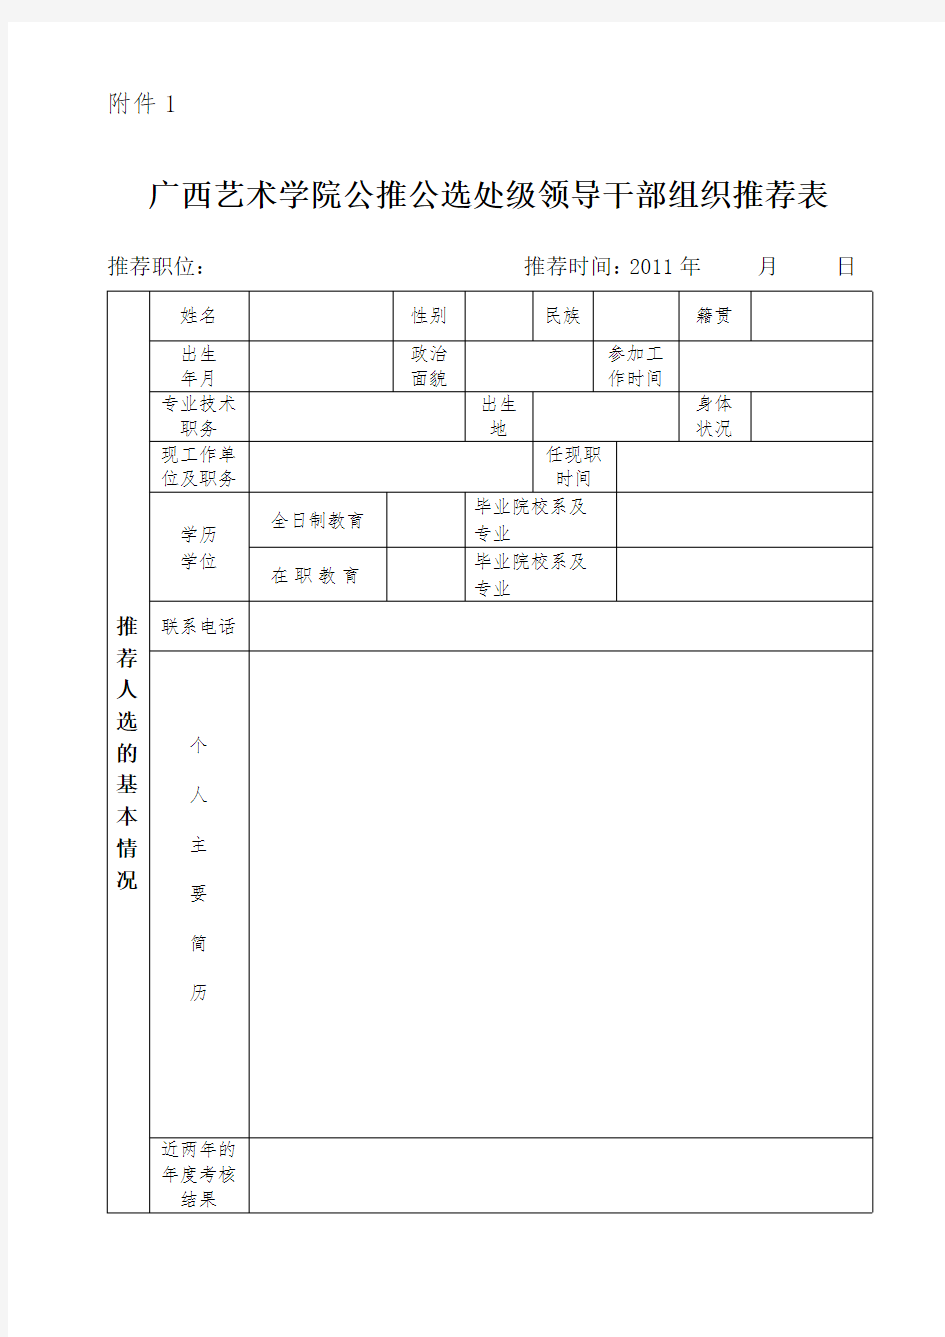 广西艺术学院公推公选处级领导干部组织推荐表